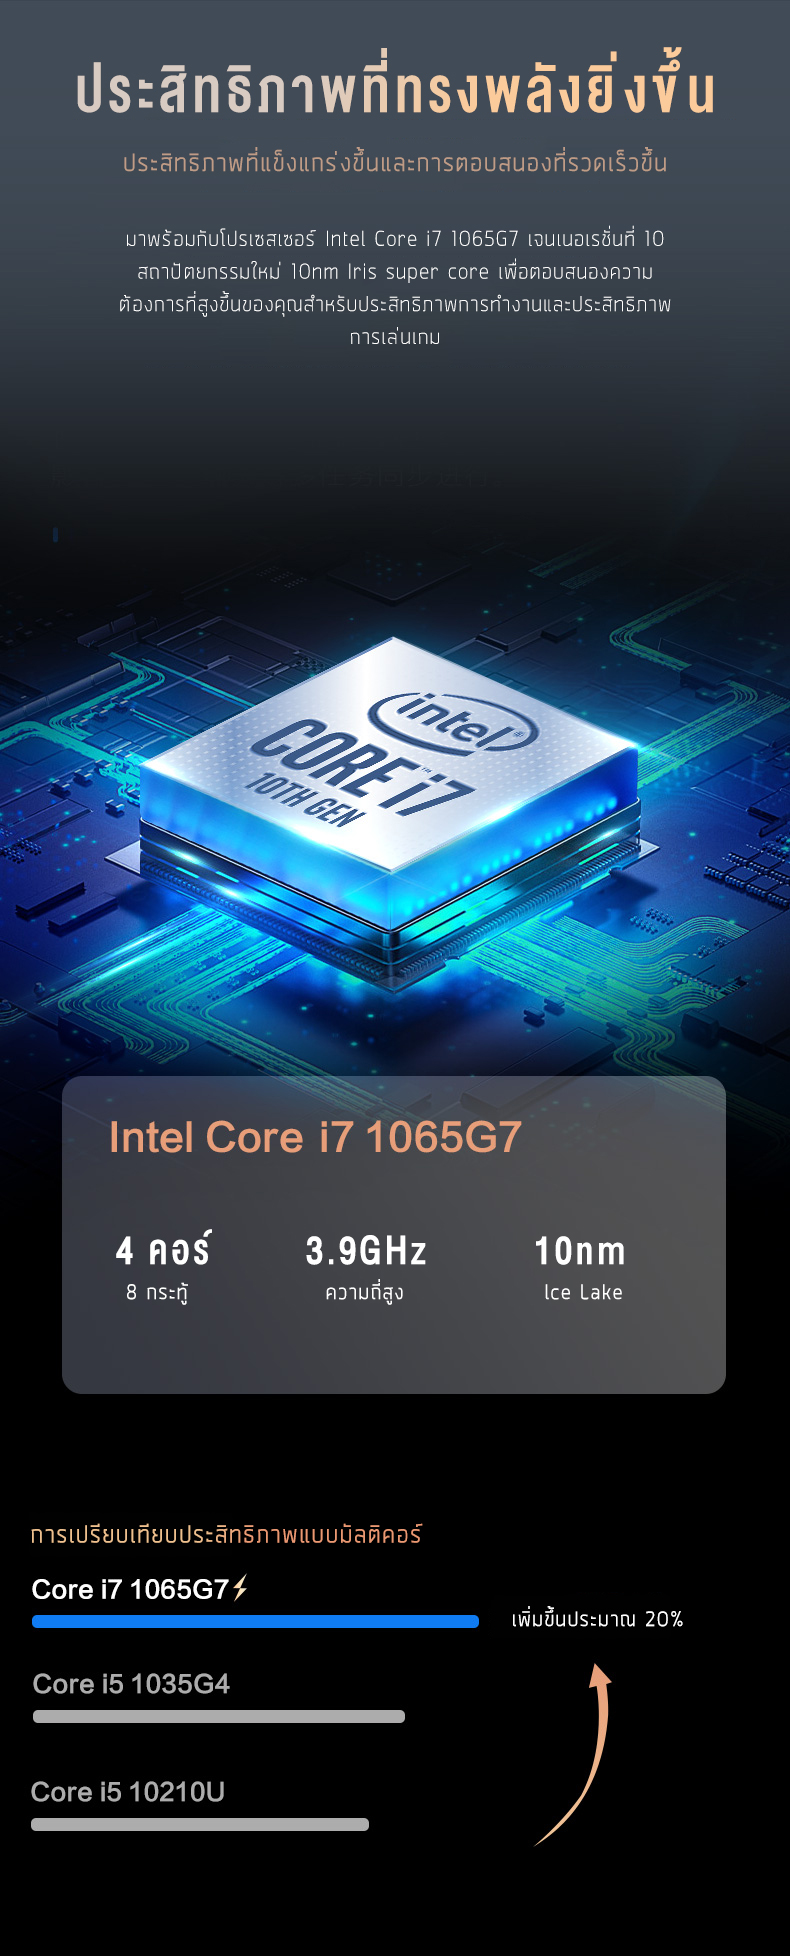 เกี่ยวกับ โน๊ตบุ๊ค ASUS factory&G 2022 new Intel i7 gen 10 RAM 16GB คอมแรงๆเล่นเกม เล่นคอมพิวเตอร์โน๊ตบุ๊ค gta v มือ 1 ราคาถูก Laptop Gaming Notebook Intel i5 RAM 8G SSD 128/256/512gb Warranty